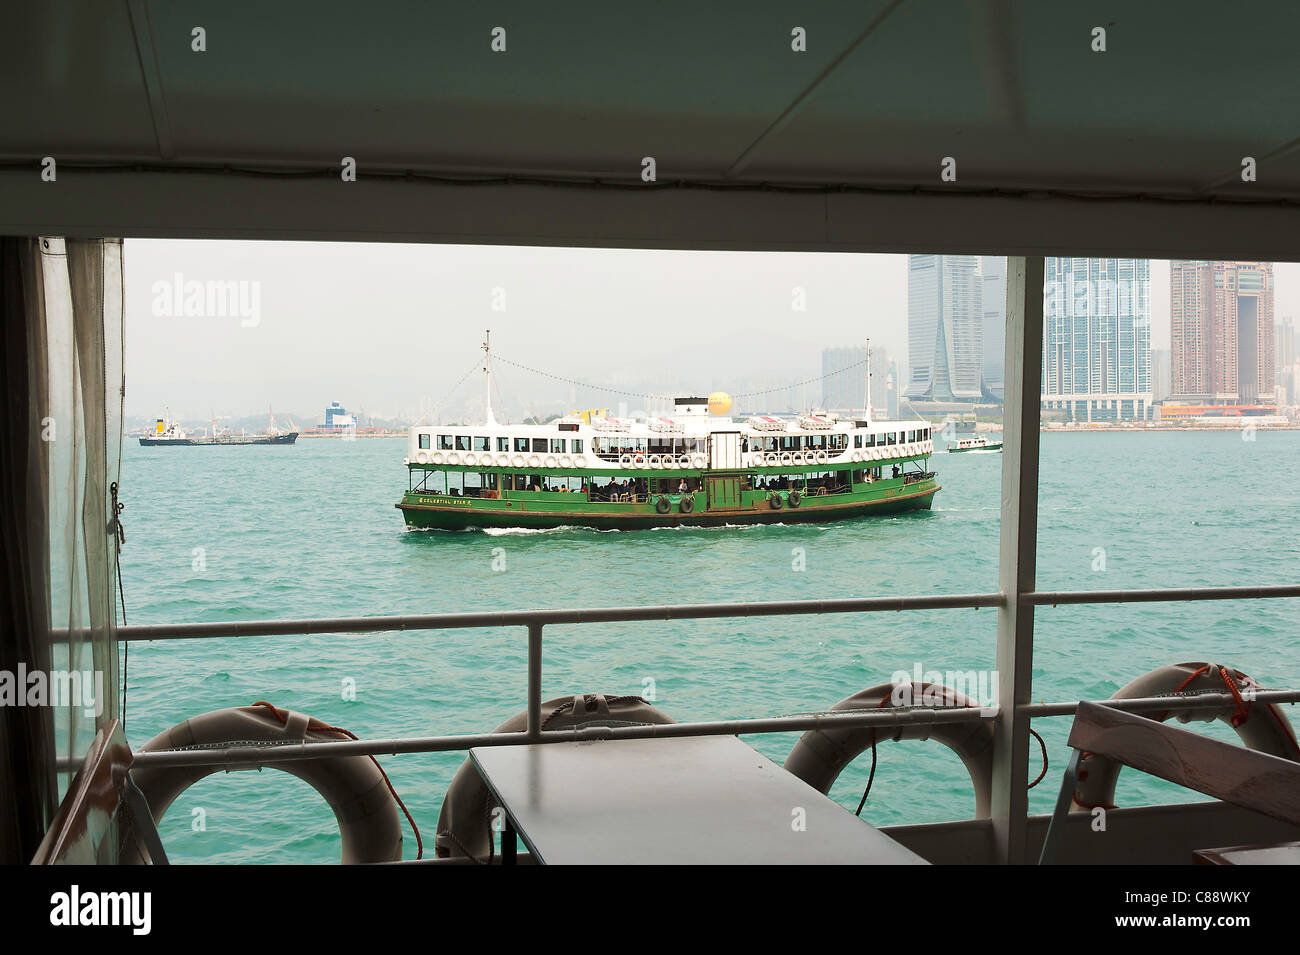 Le Livre vert et blanc ligne Star Ferry Boat Service Étoile céleste de la voile dans le port de Victoria à Kowloon Hong Kong Chine Asie Banque D'Images